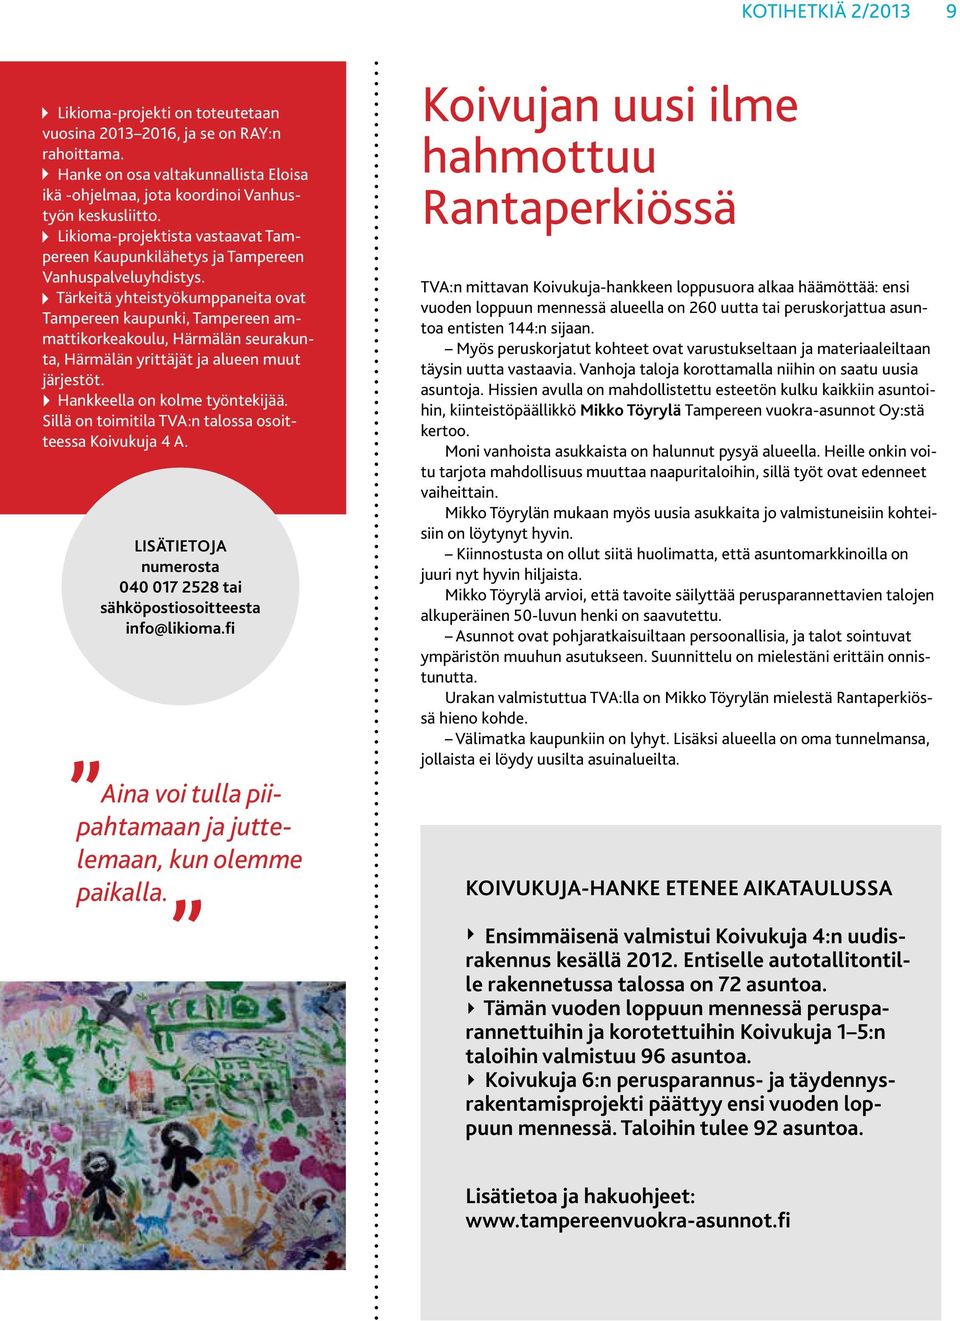 Tärkeitä yhteistyökumppaneita ovat Tampereen kaupunki, Tampereen ammattikorkeakoulu, Härmälän seurakunta, Härmälän yrittäjät ja alueen muut järjestöt. Hankkeella on kolme työntekijää.